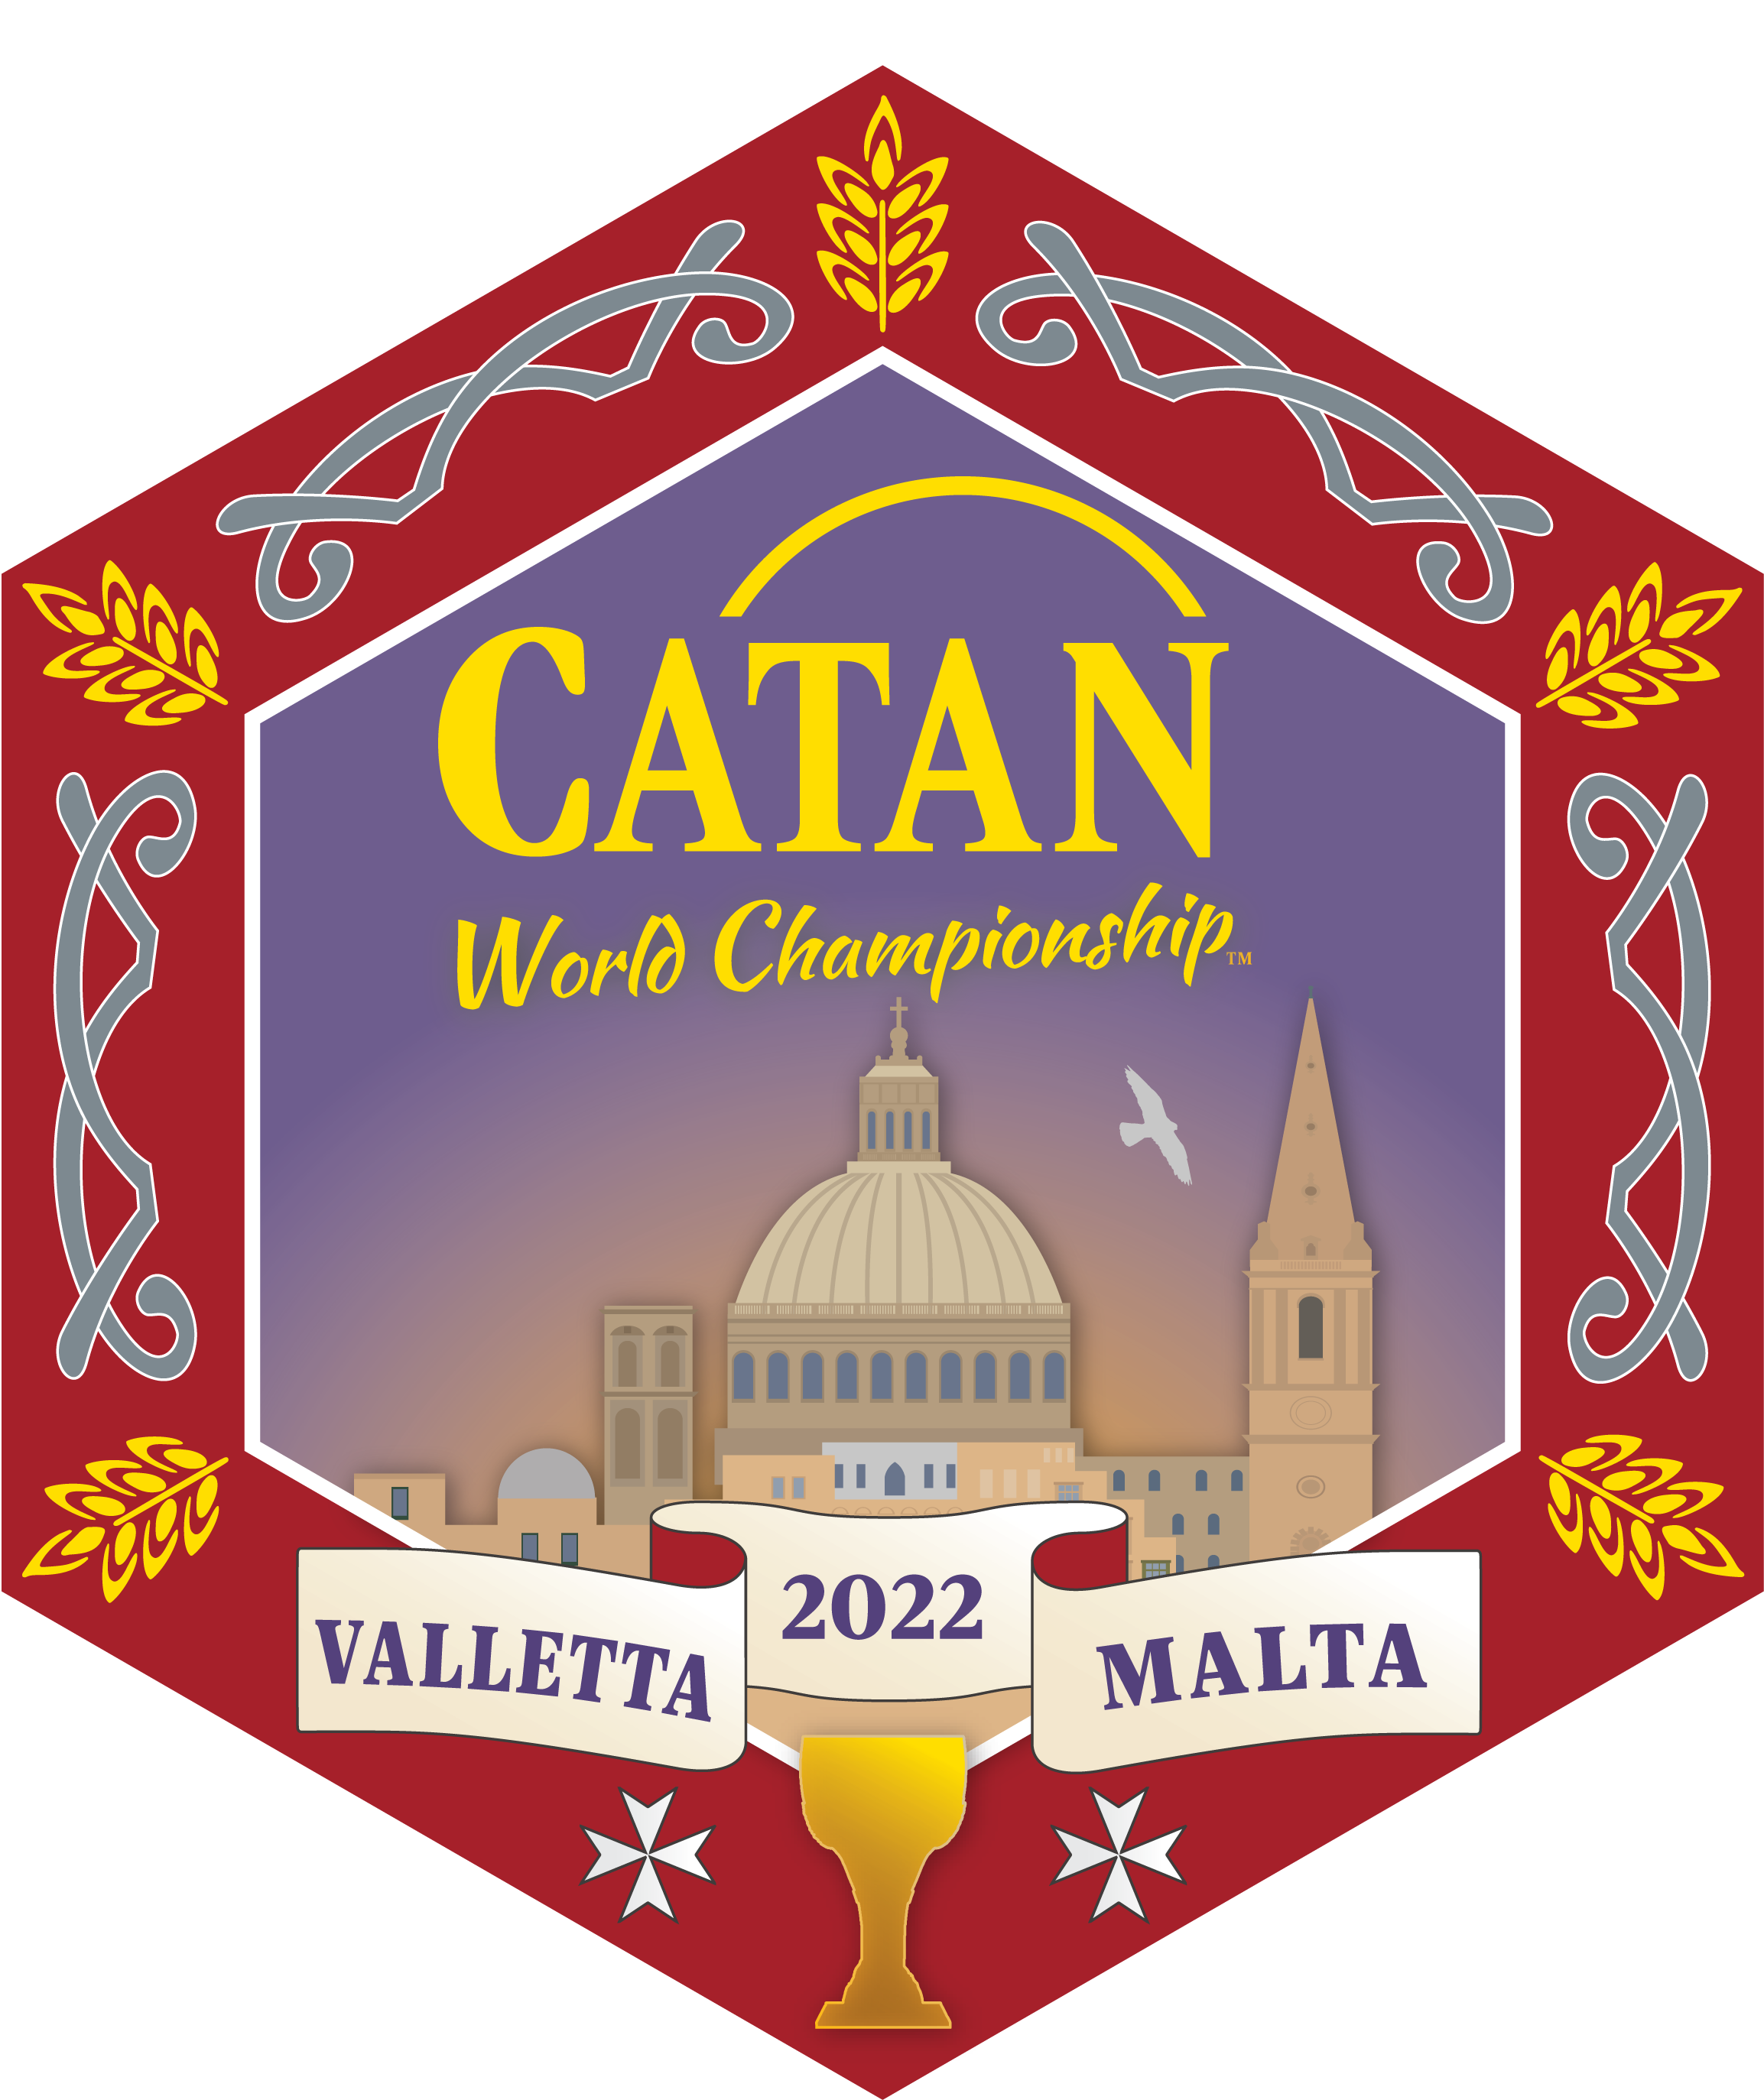 CWC 2022 logo